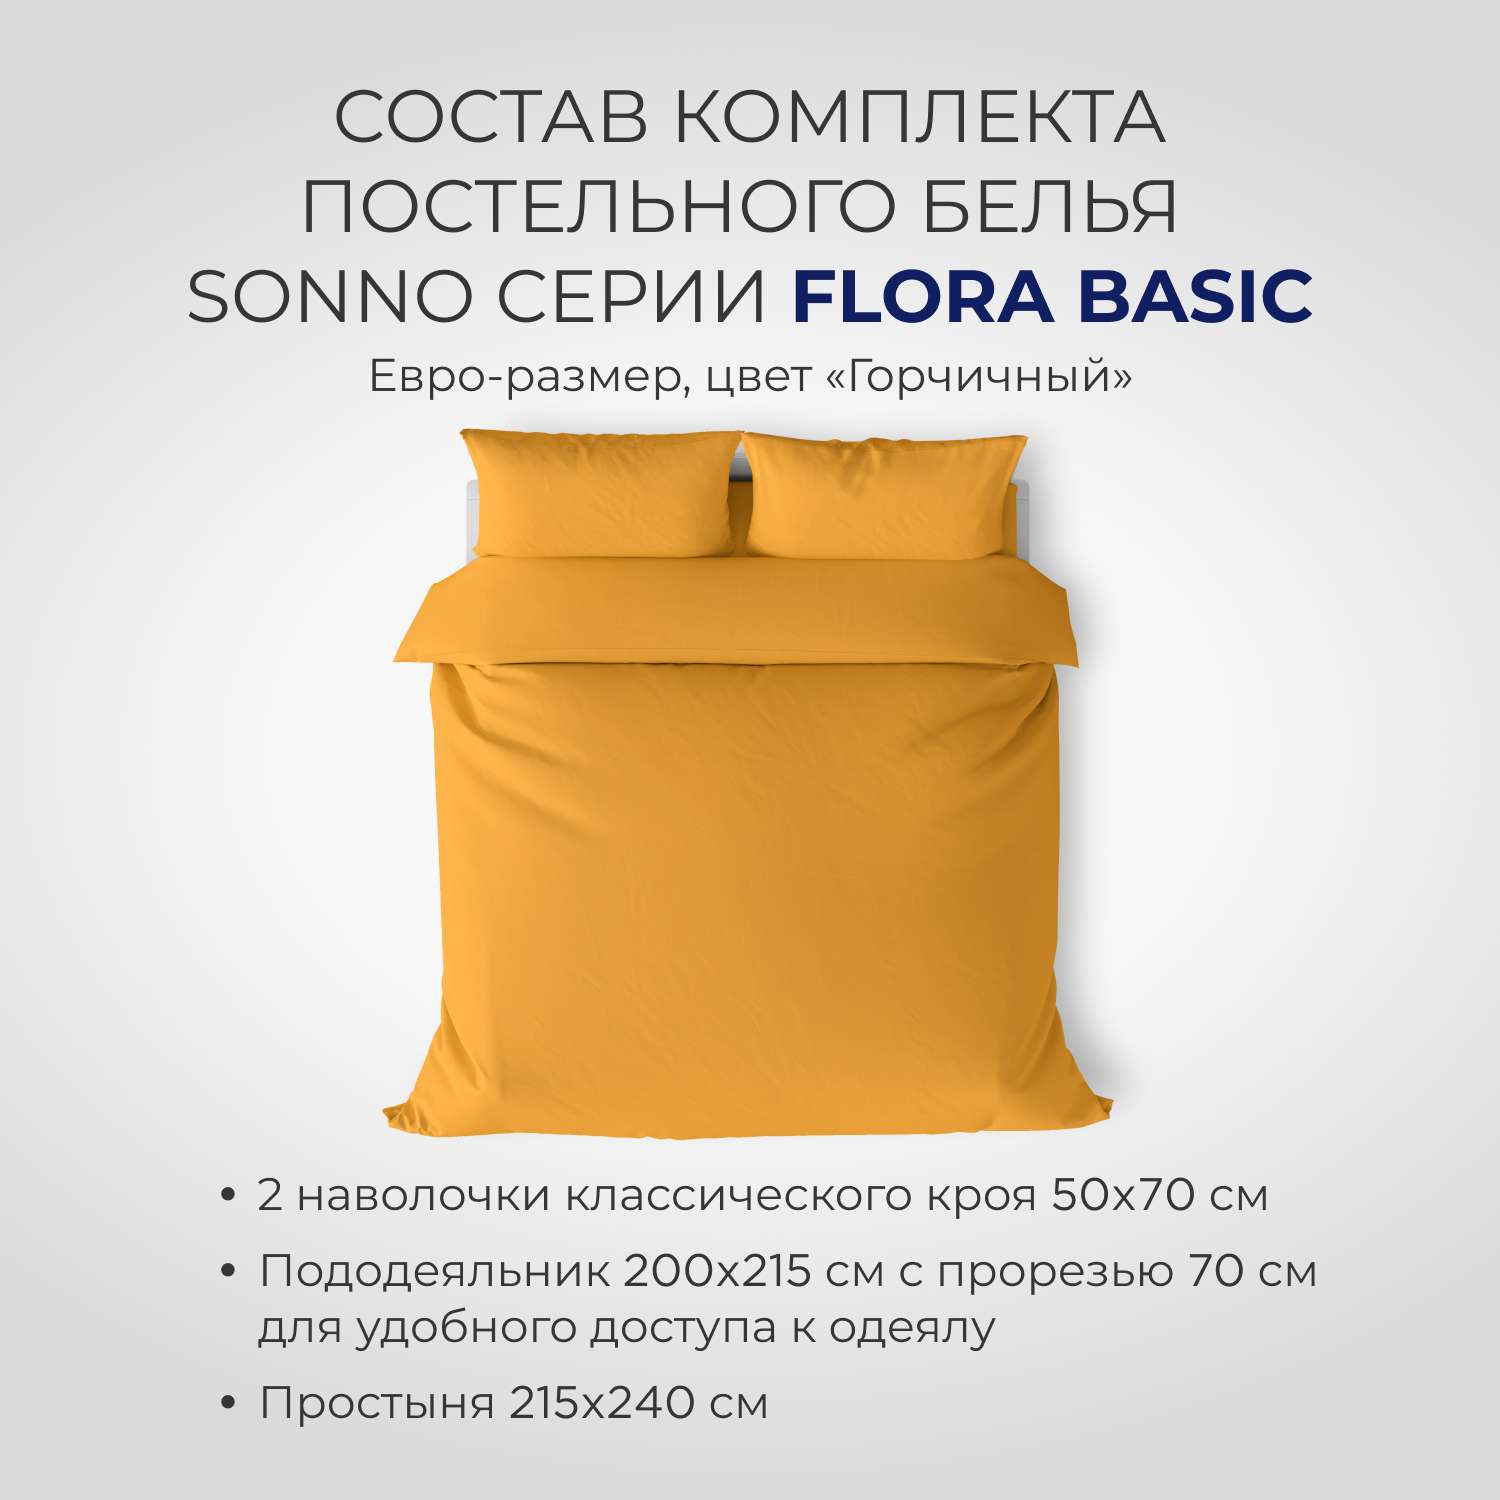 Постельное белье SONNO FLORA BASIC евро-размер цвет Горчица - фото 2